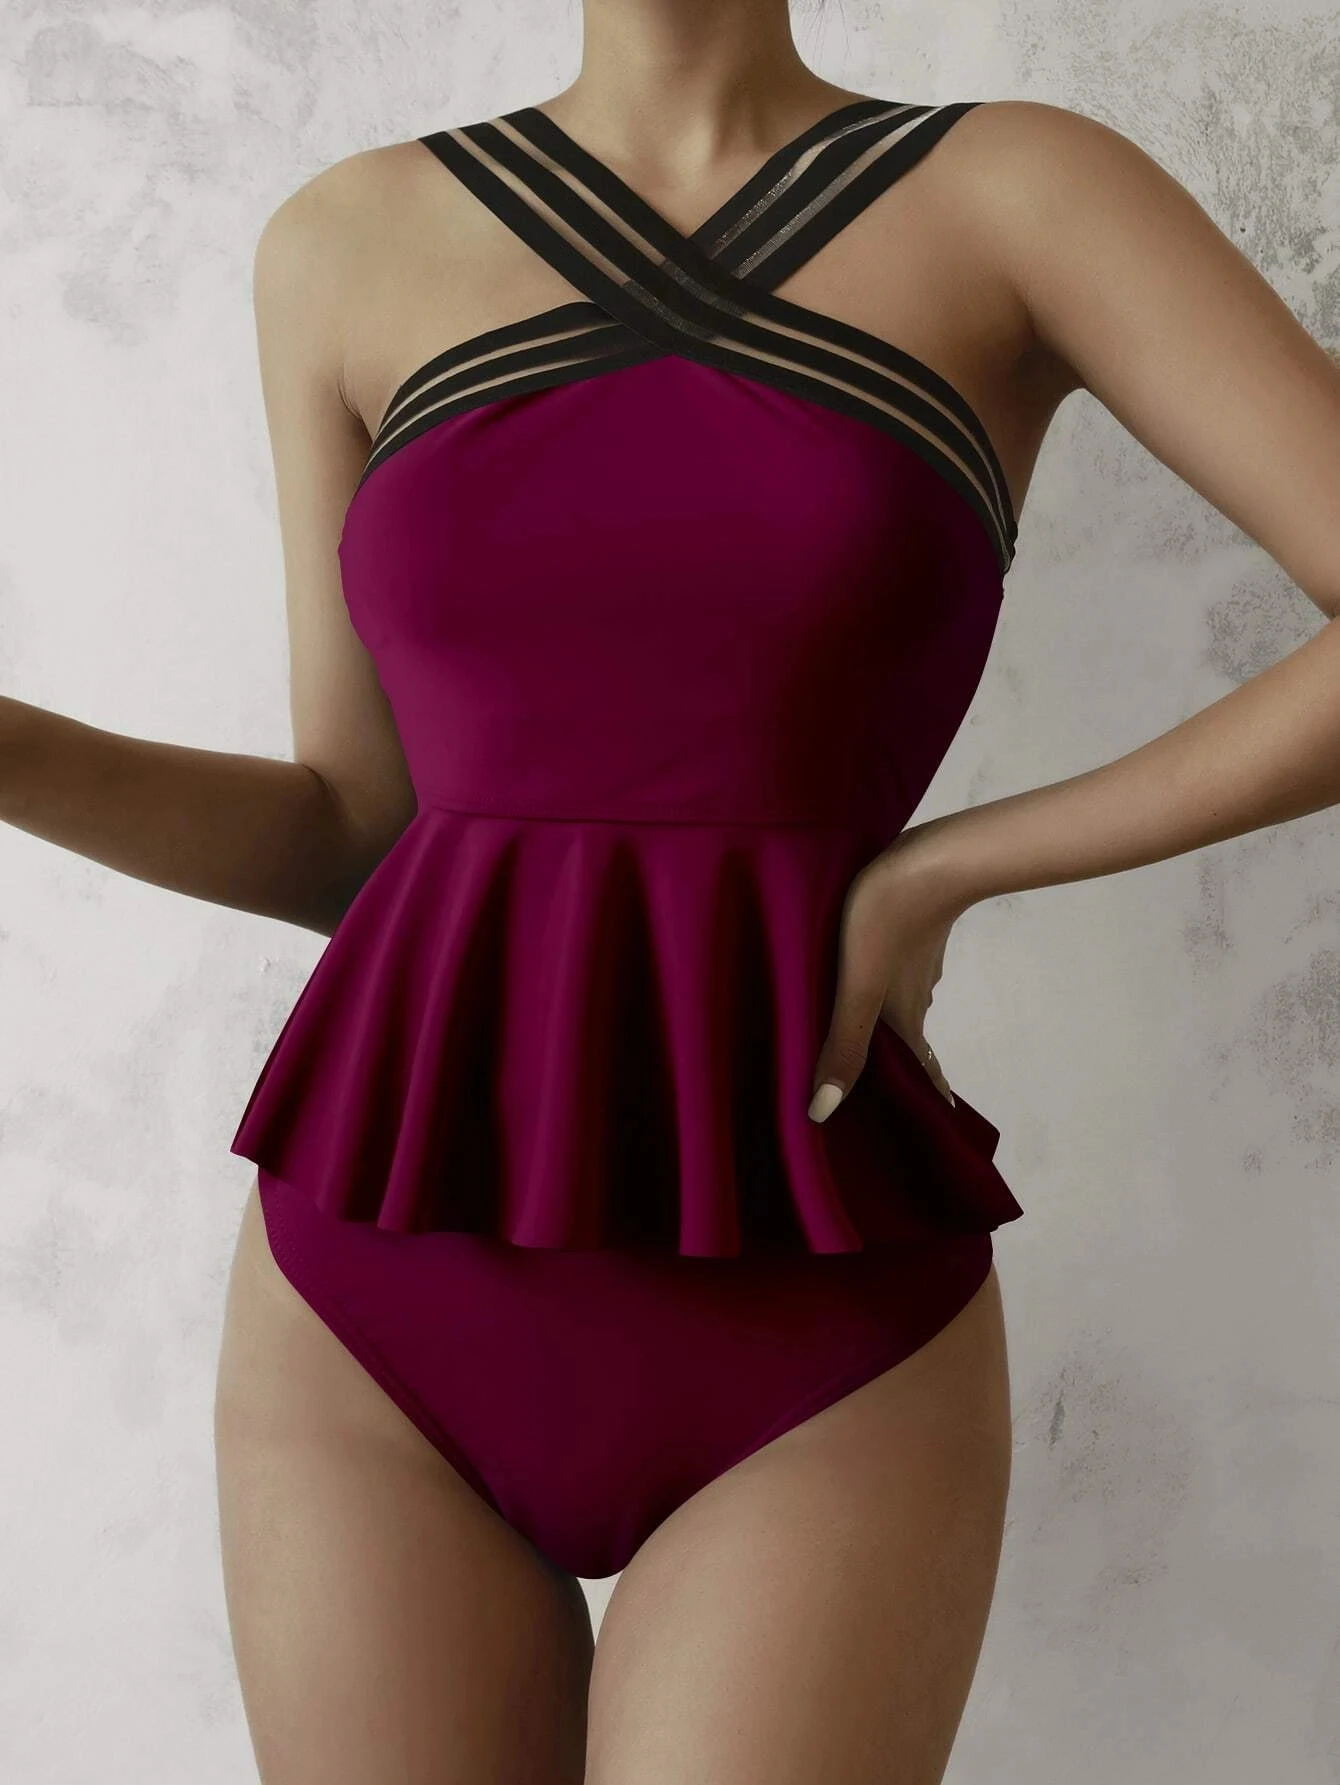 Faskob Two Piece Tankini Solid Color Sheer Necktie Maxi Dress Women Swimwear Bikini Set Summer Beach Vintage Bathing Suit